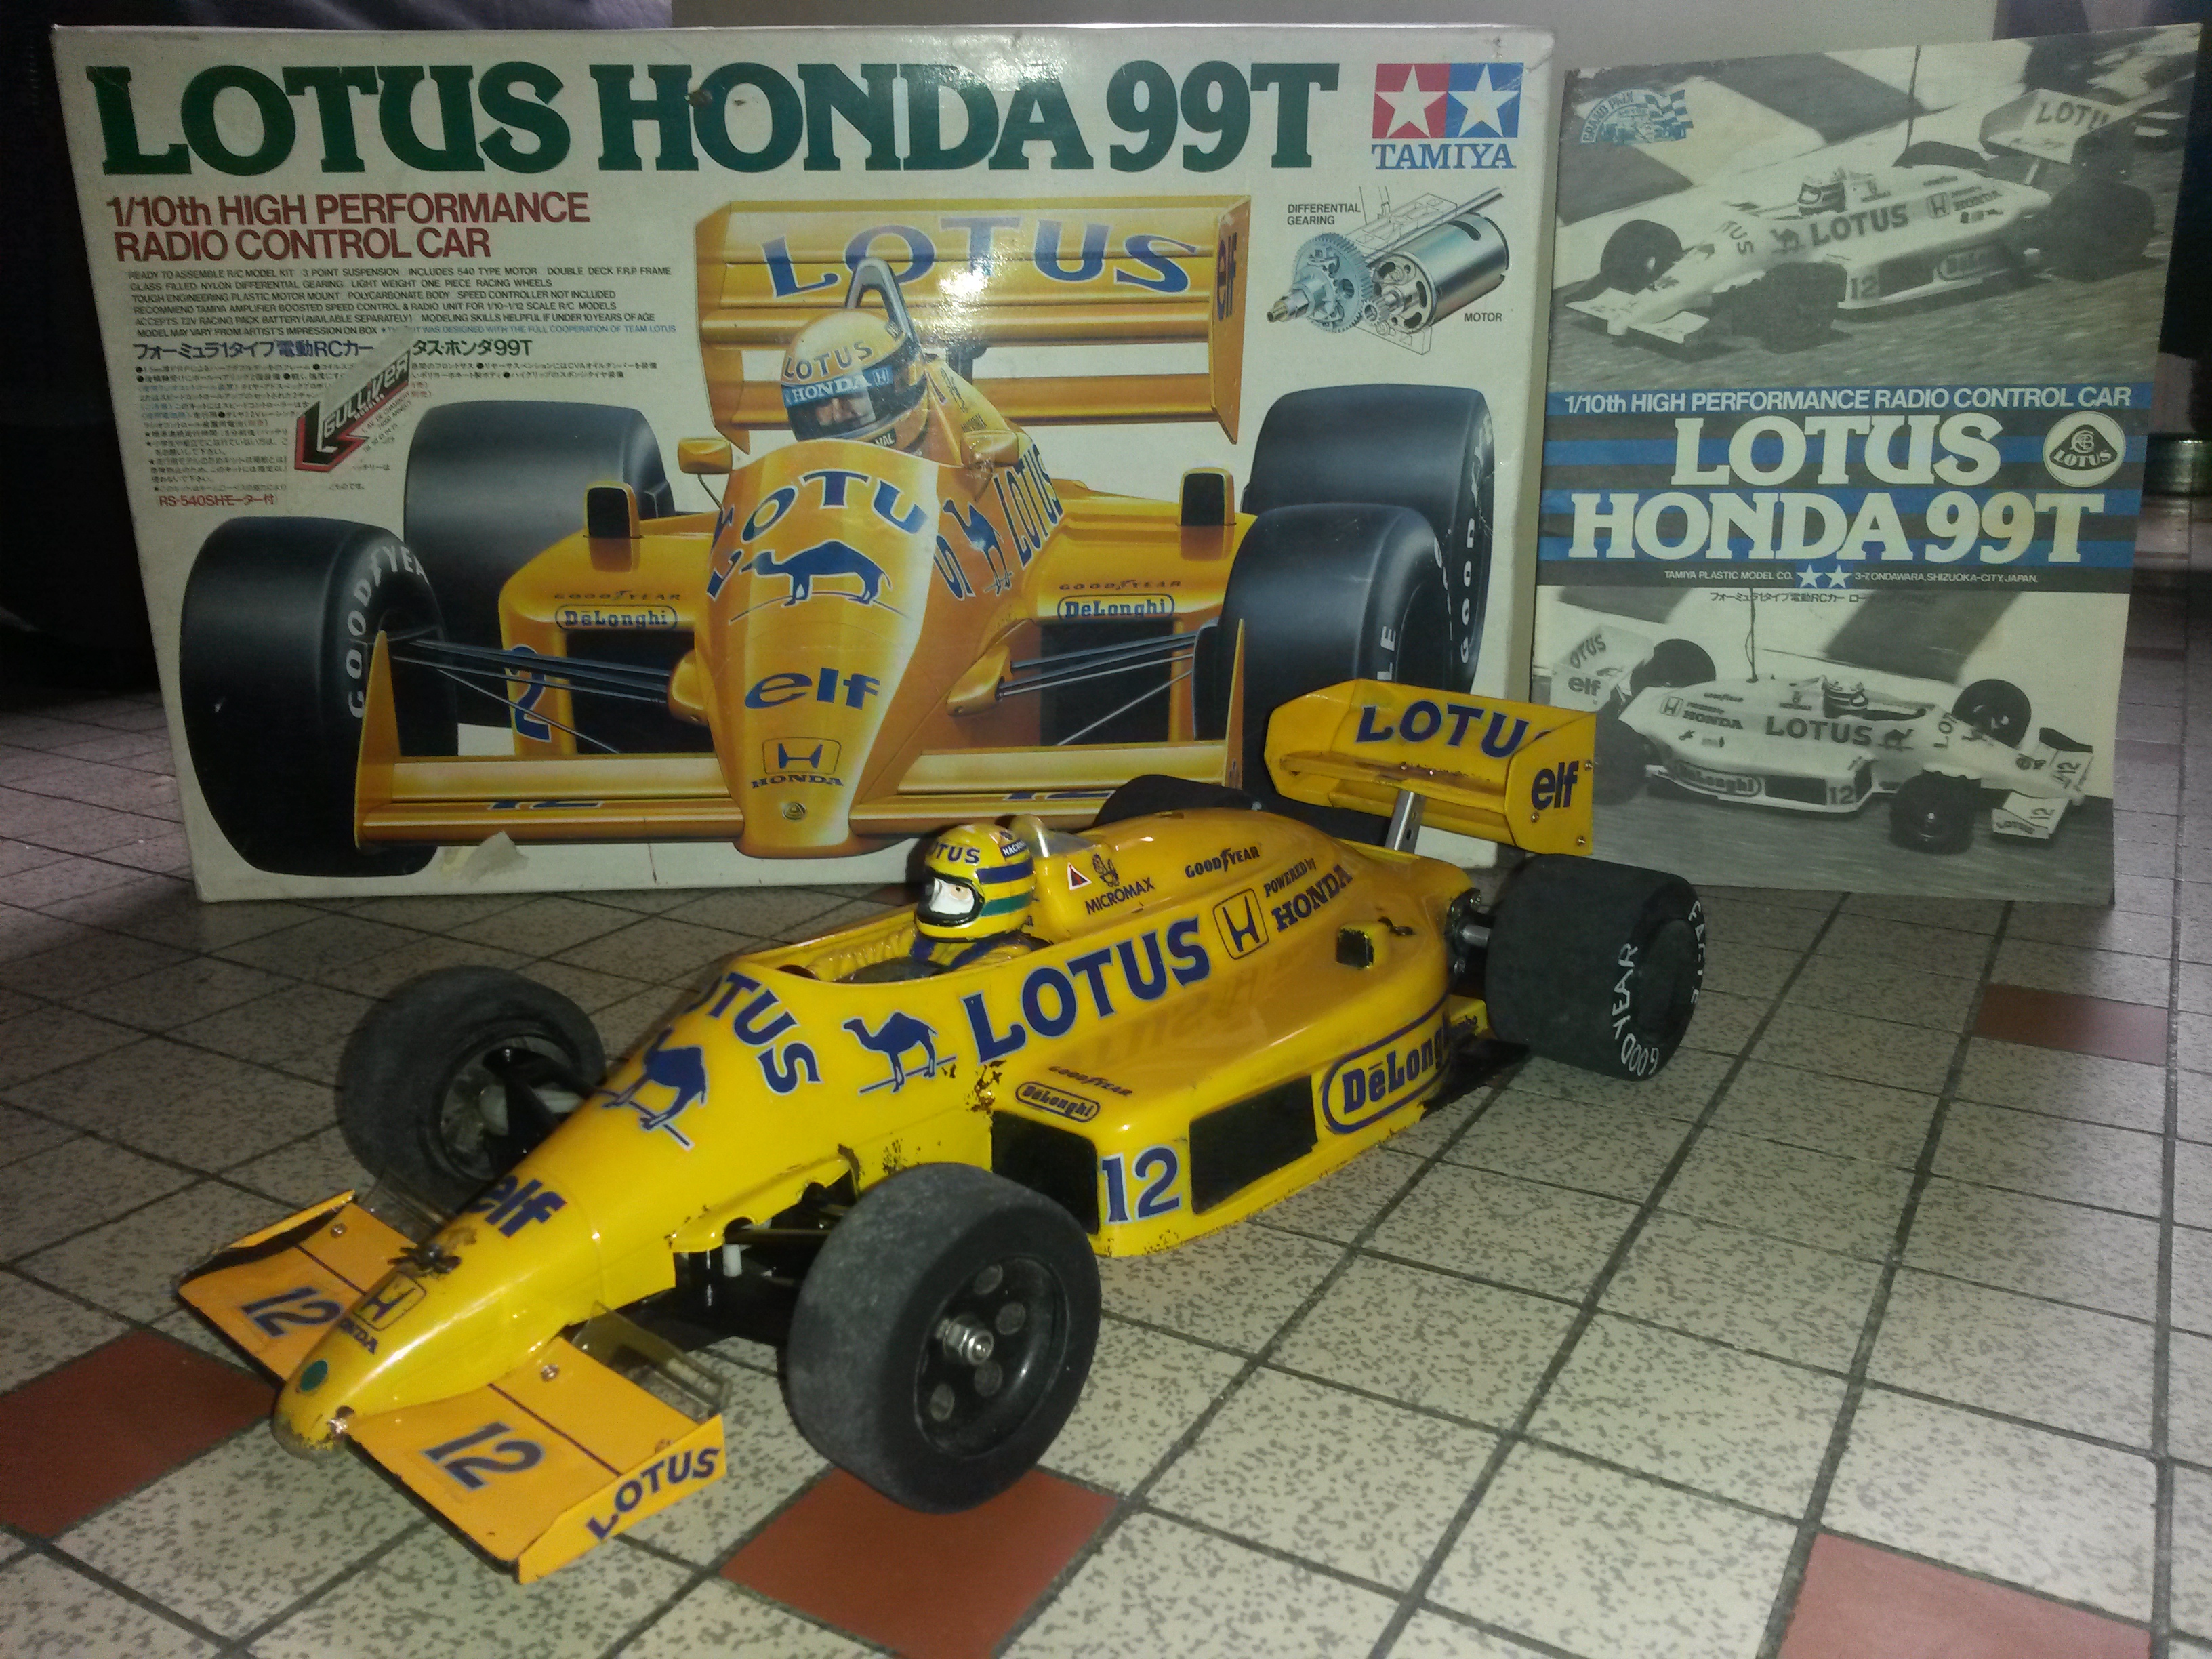 web-wintage/bruteTamiya Road Wizard Lotus Honda 99T 1987.jpg
